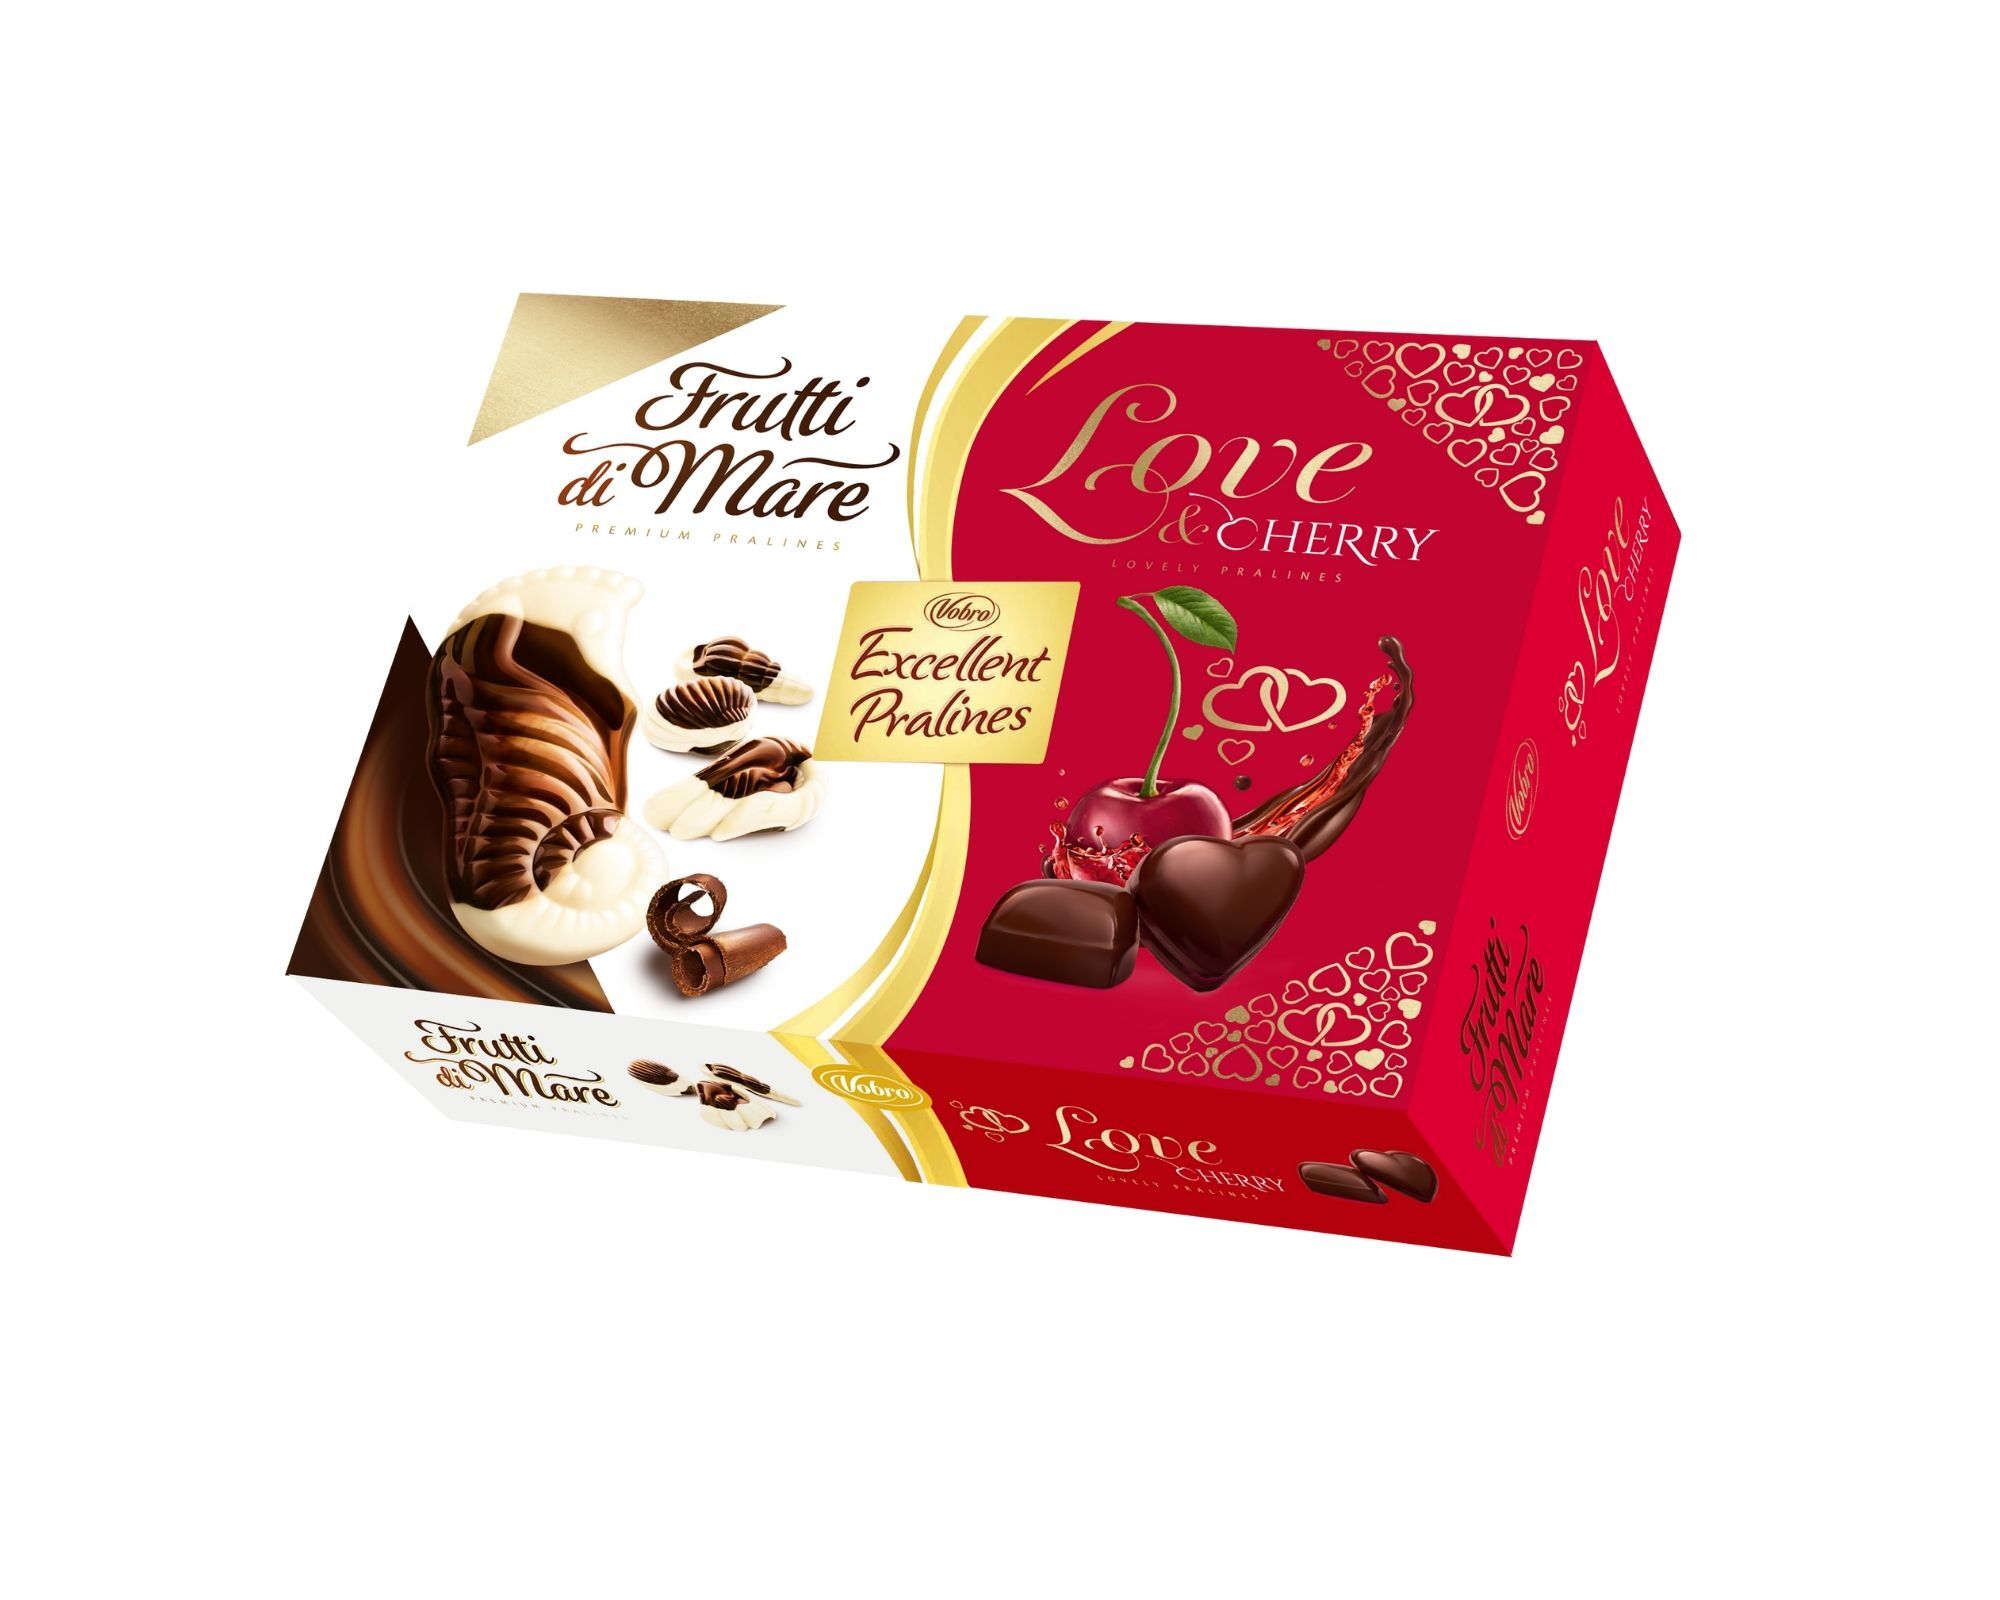 Конфеты шоколадные в коробке Vobro Excellent Pralines, подарочные конфеты ш...